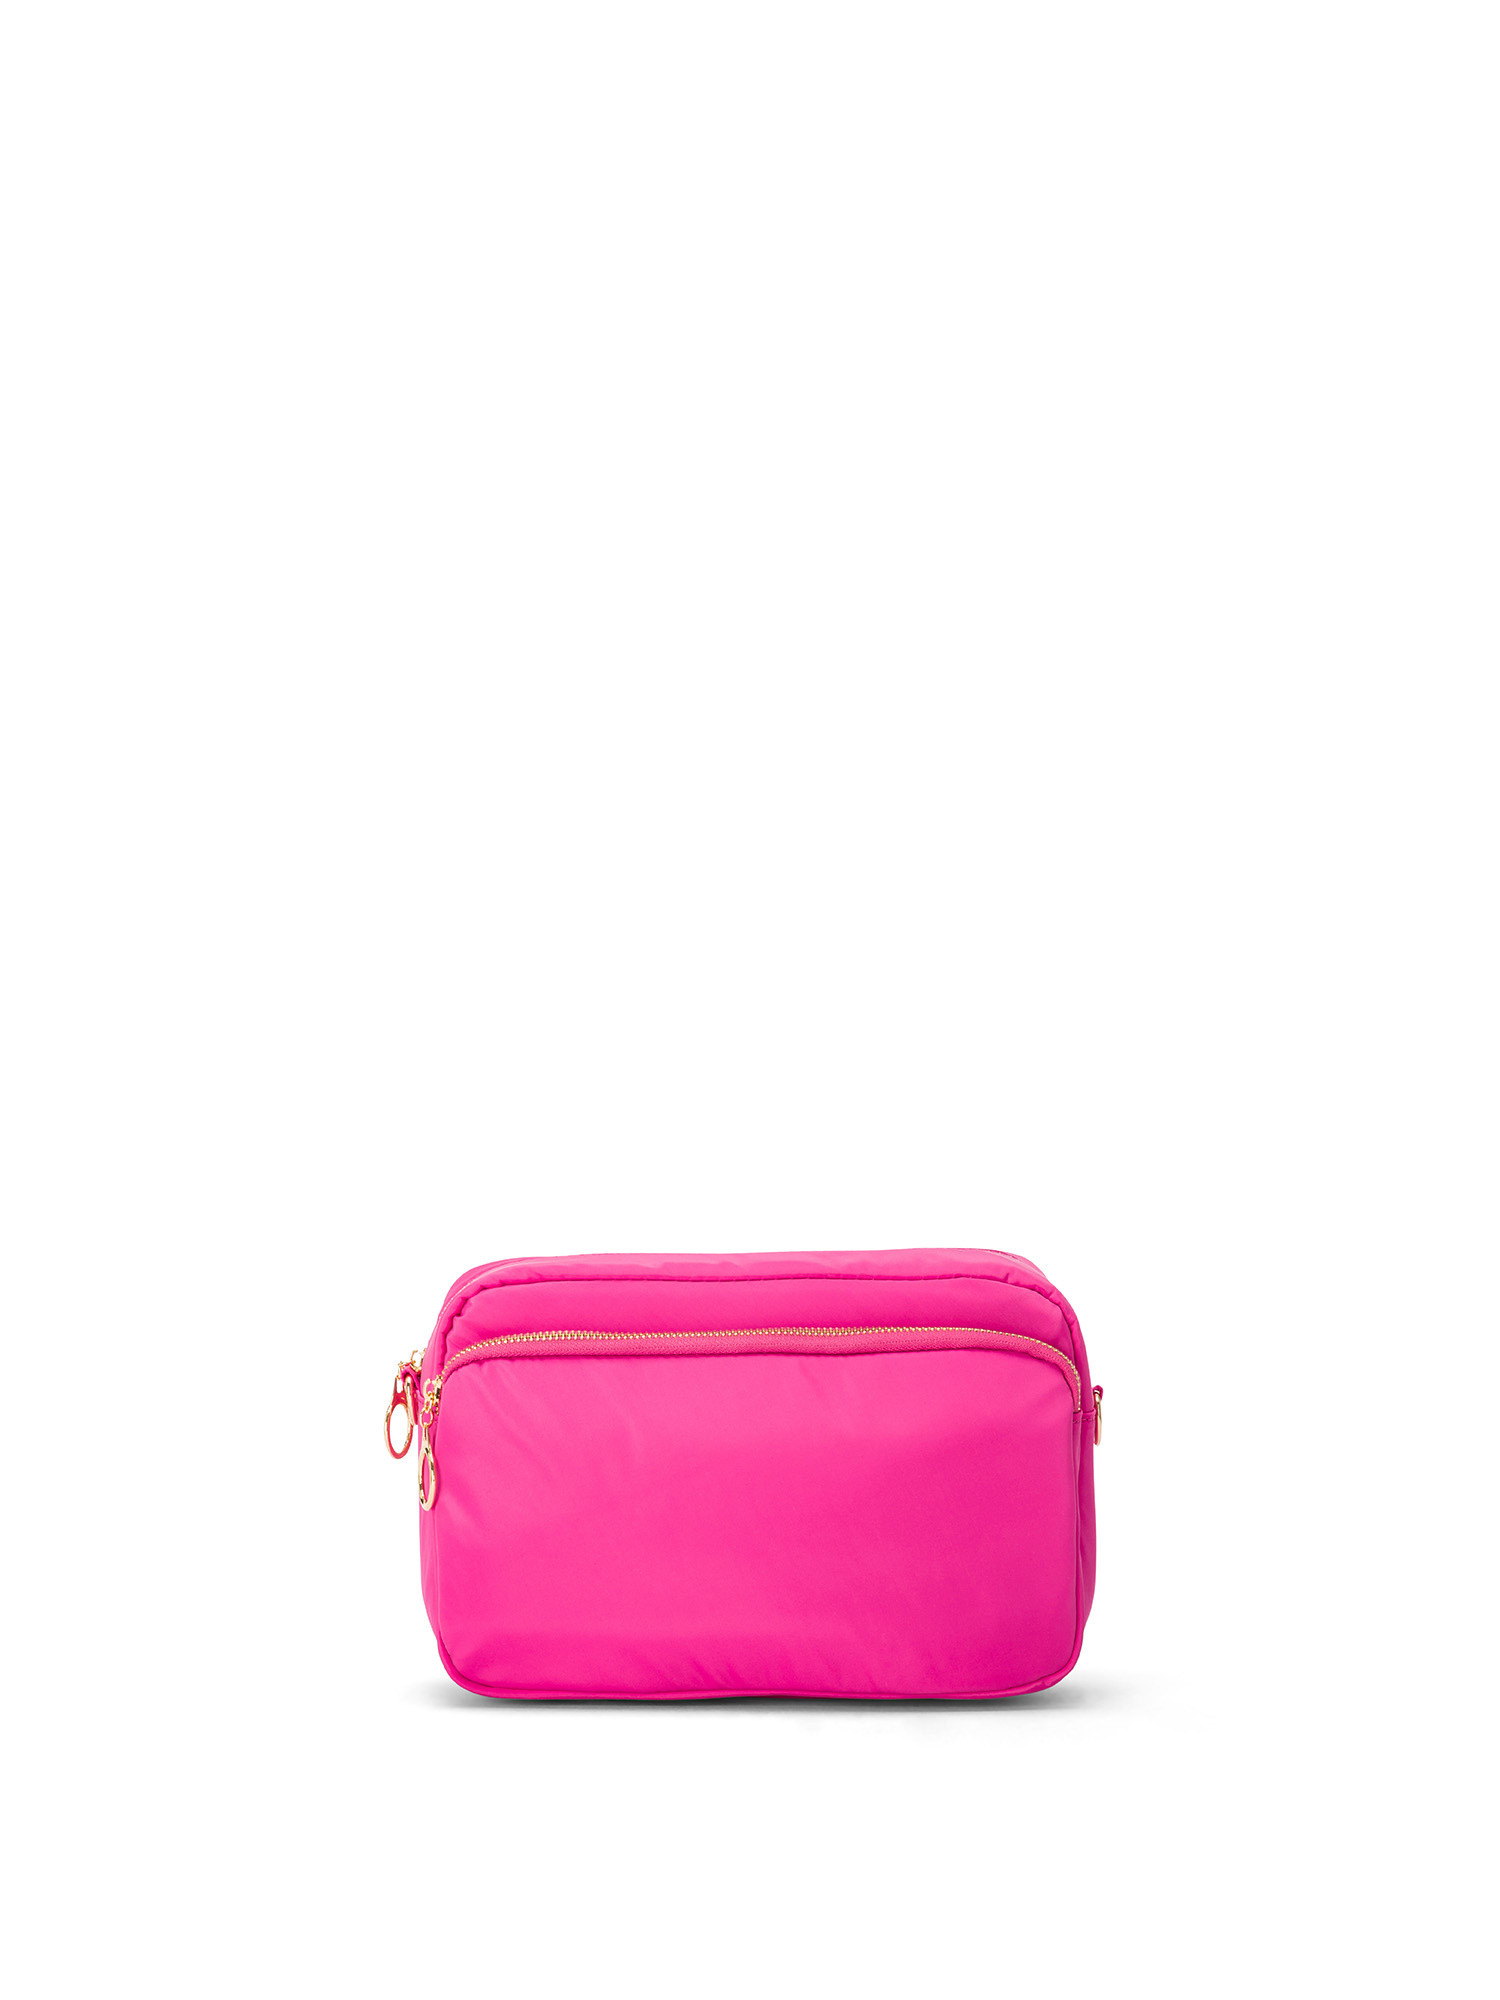 Koan - Shoulder bag, Dark Pink, large image number 0